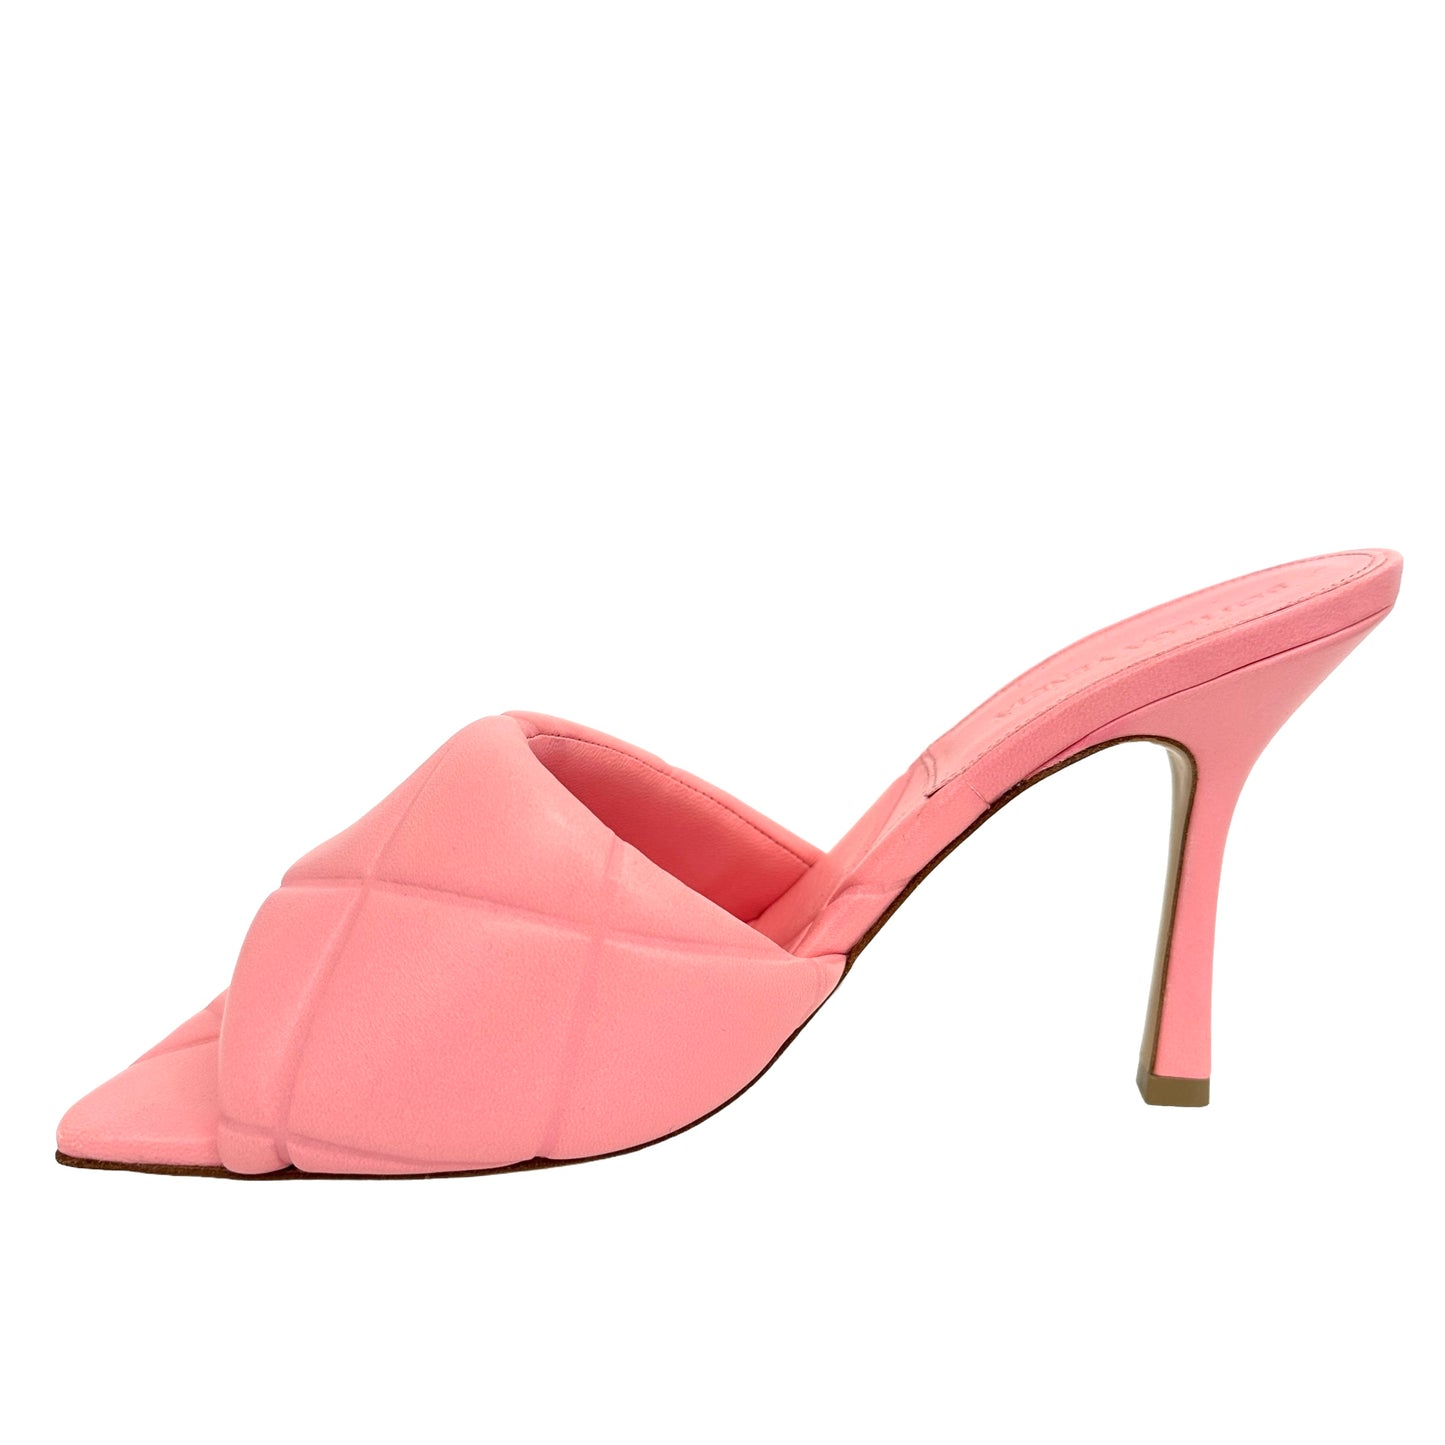 Pink Leather Slides - 9.5